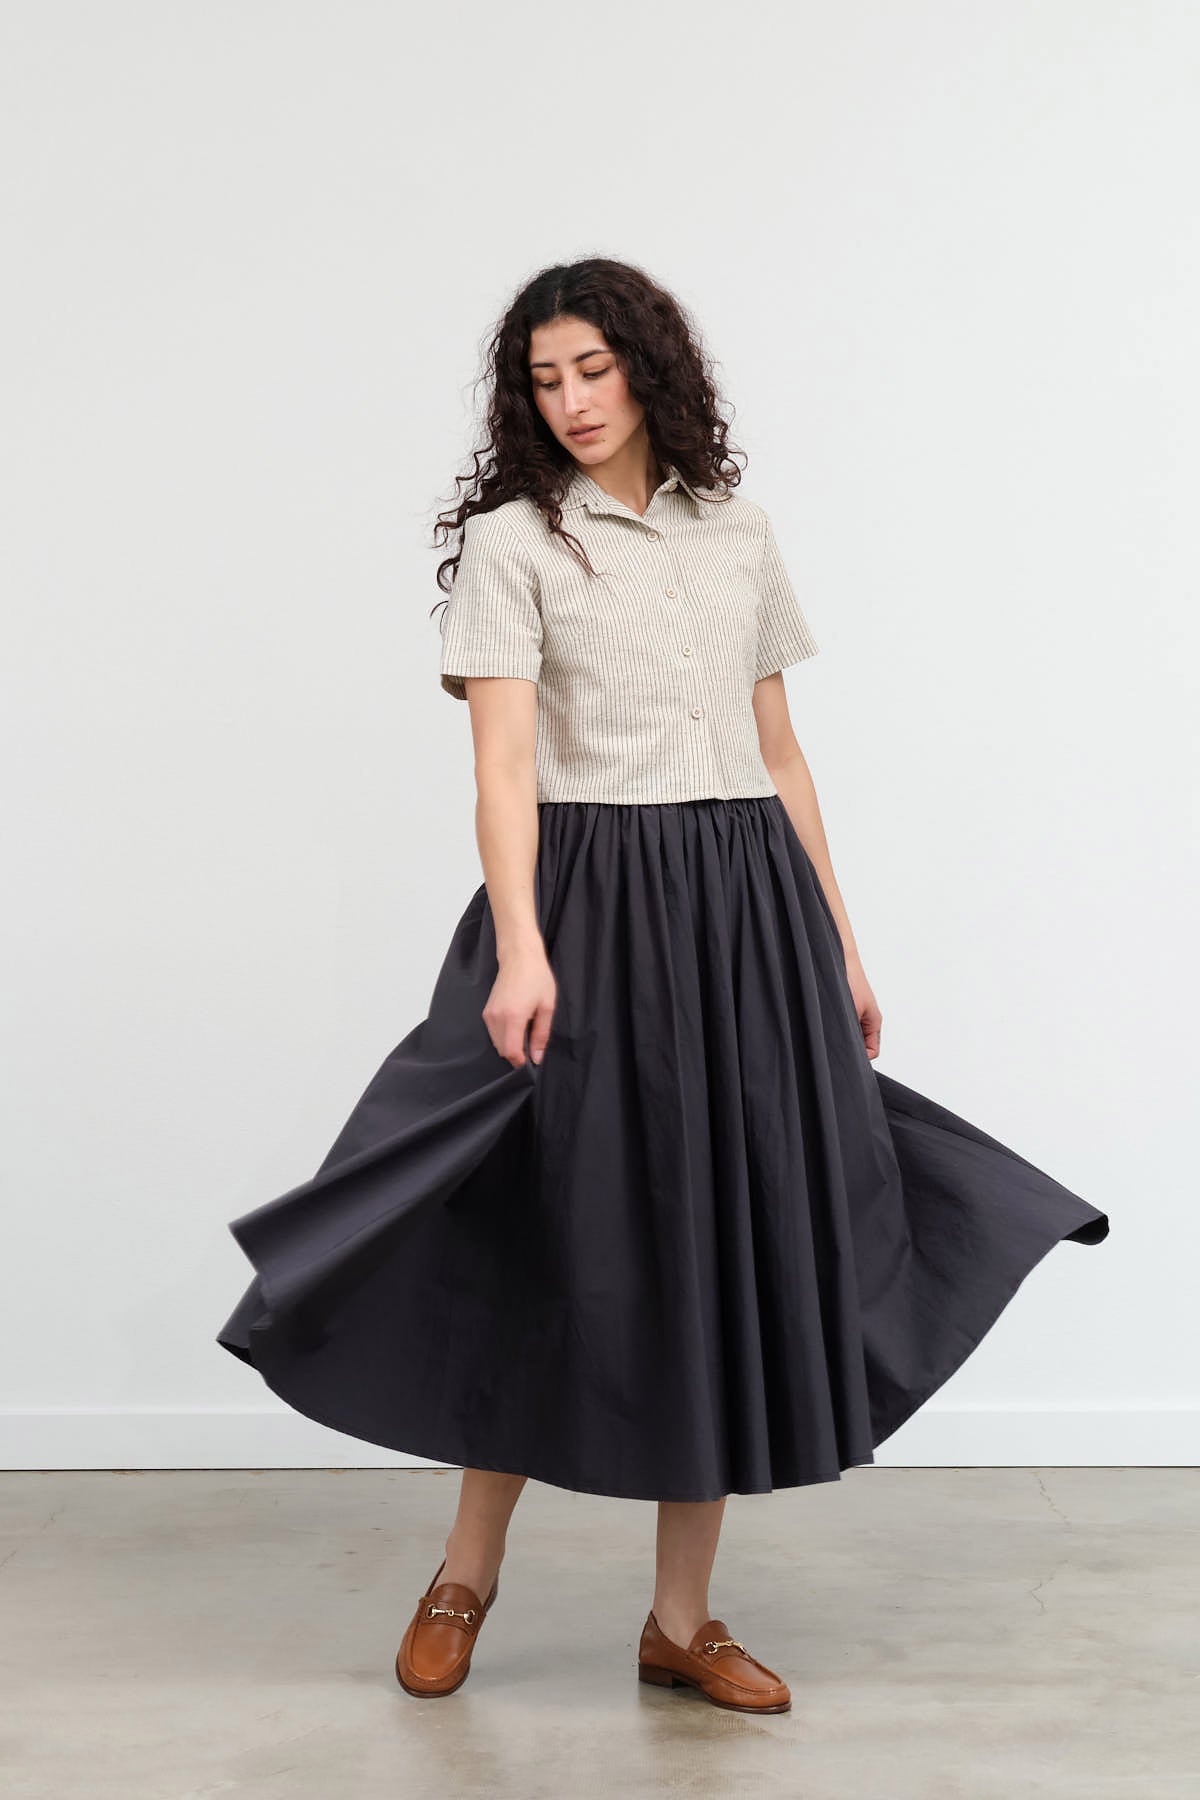 Styled Papery Elastic Prairie Skirt in Navy Black